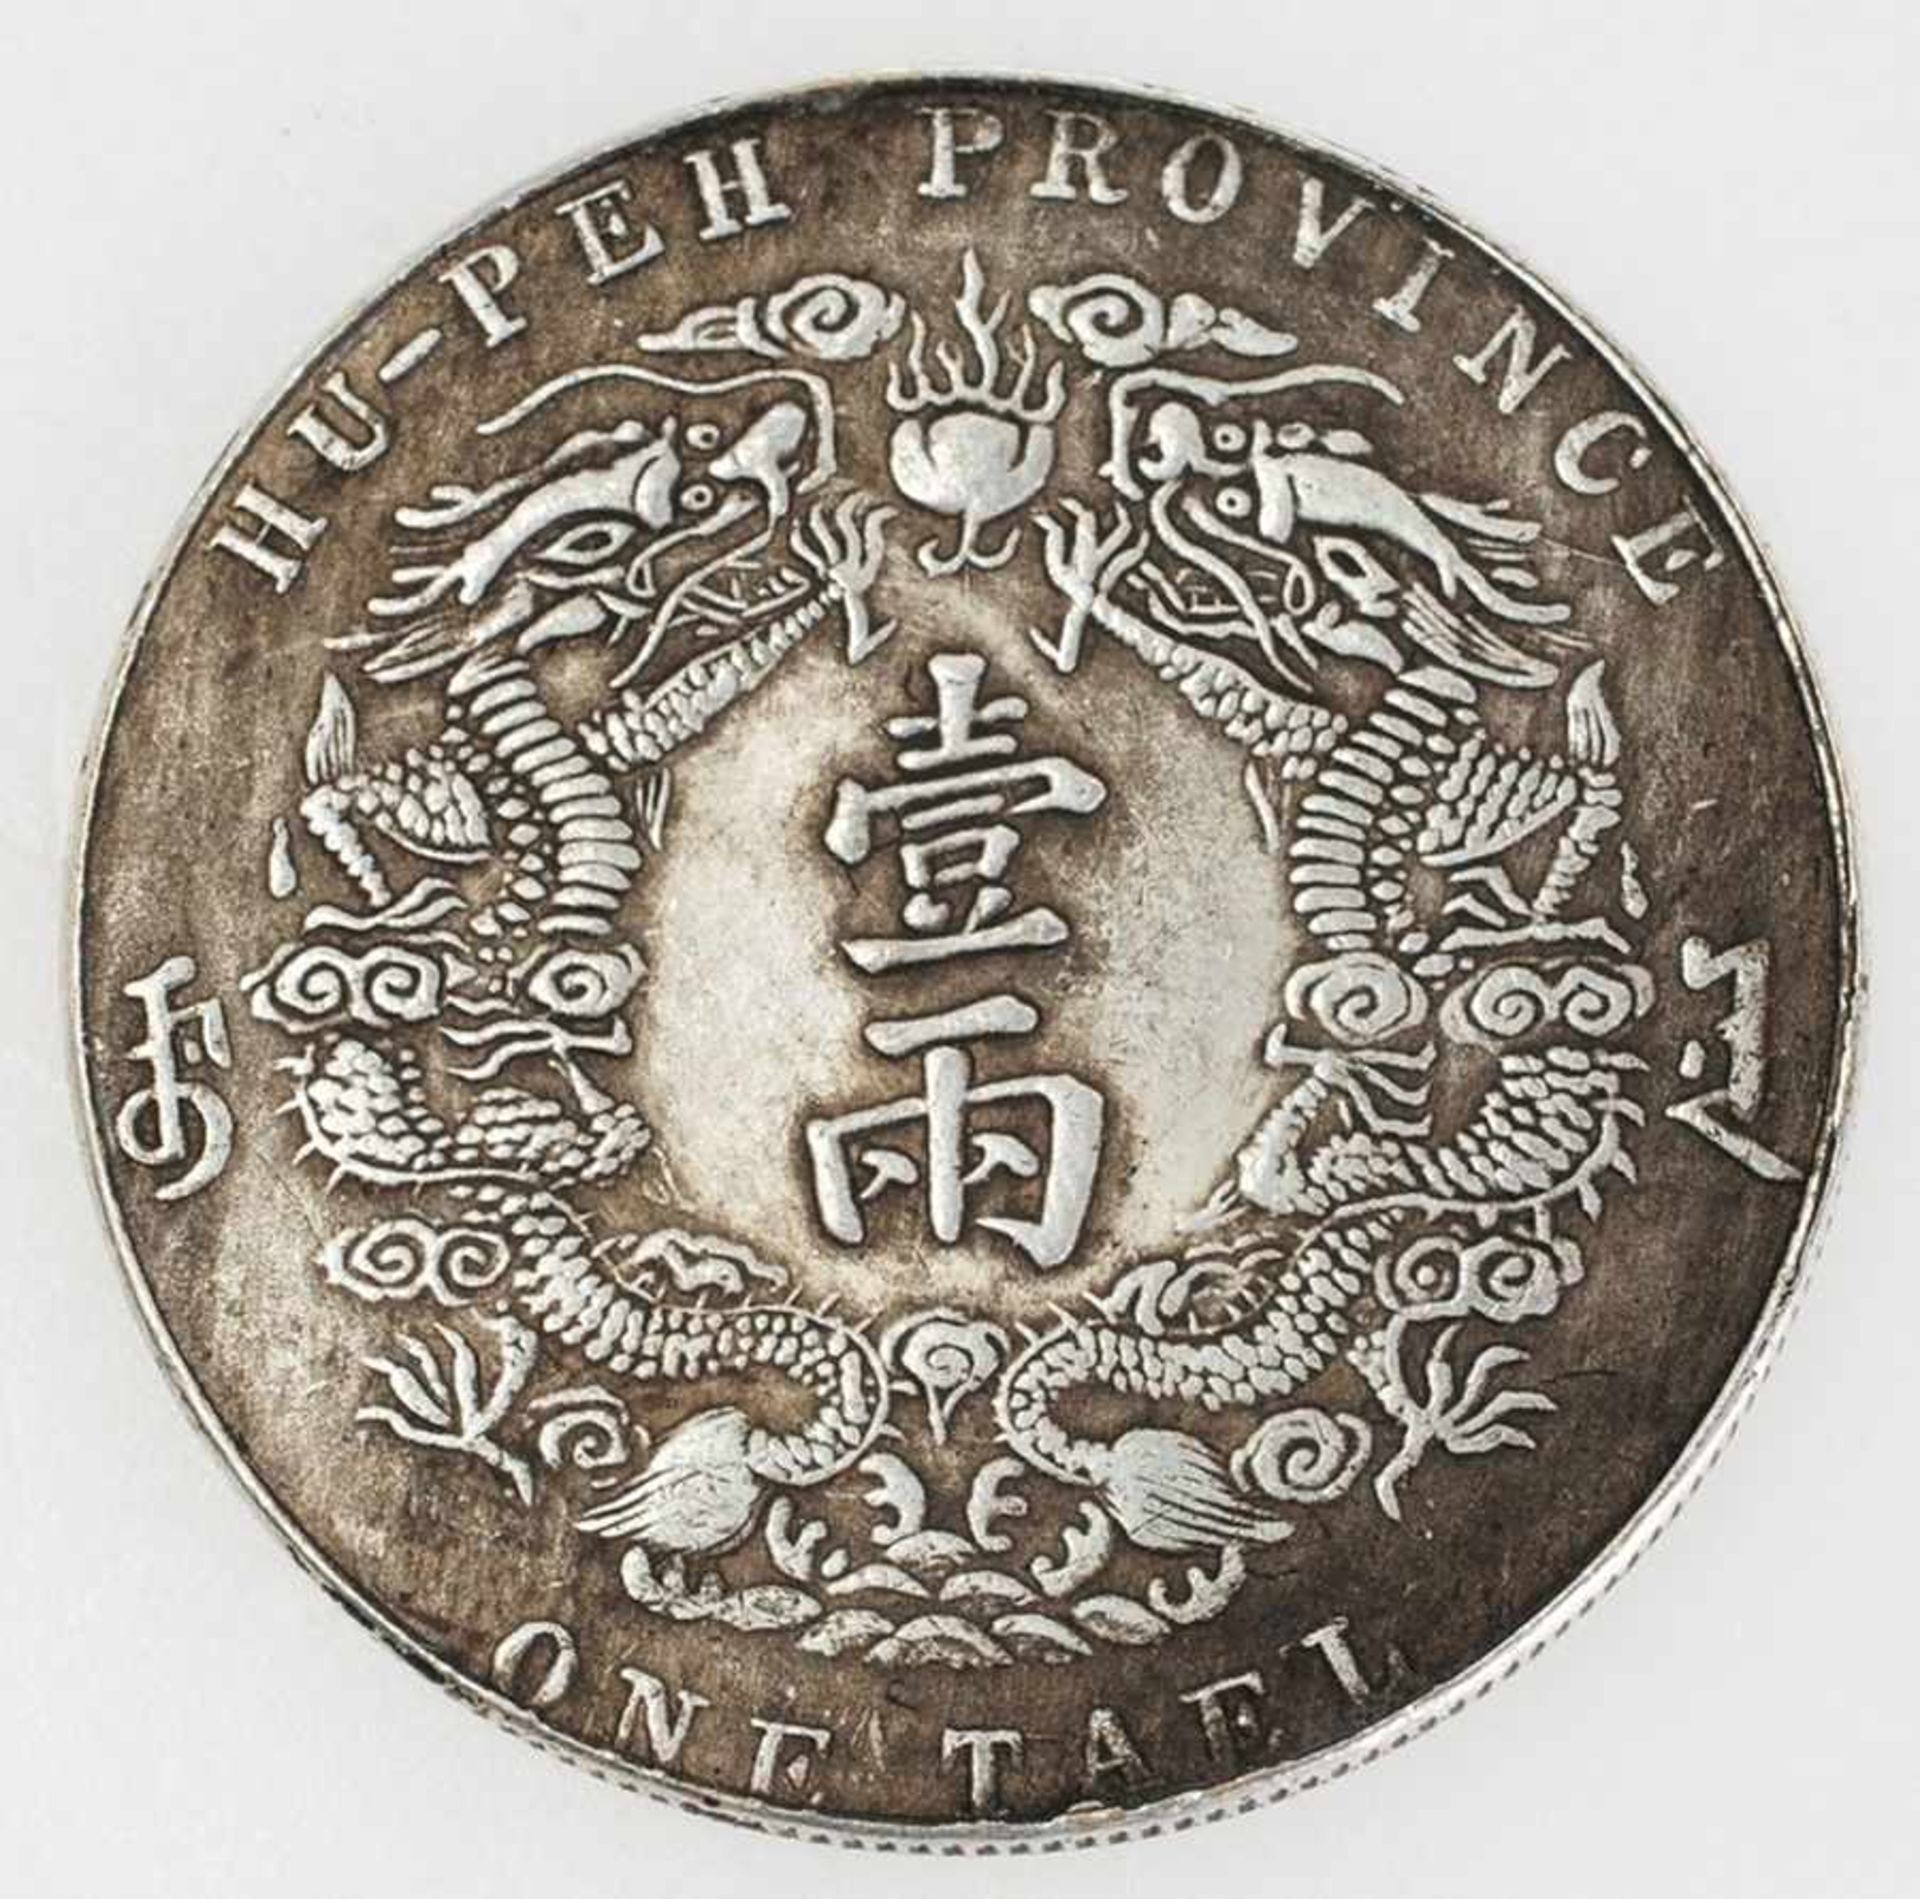 Chinesischer Silber-Tael der Provinz Hu-Peh Alters- u. Gebrauchsspuren. Gew. 22 g. D. 38 mm. (79)